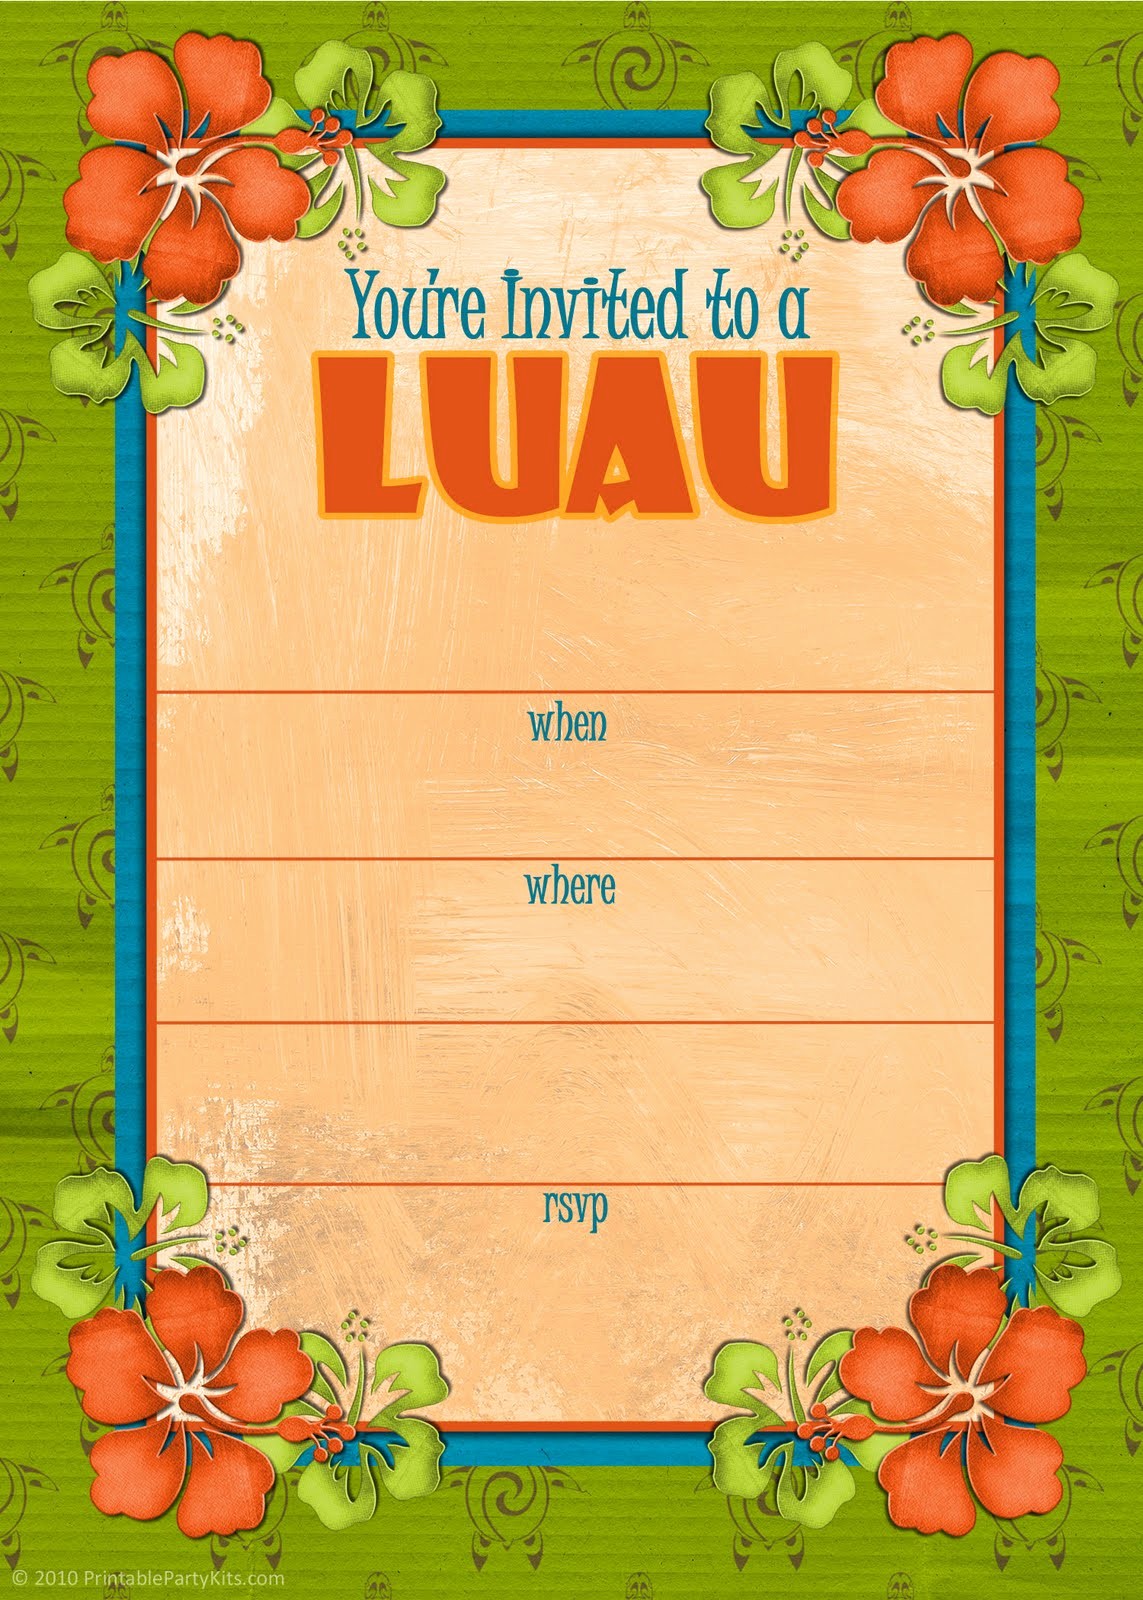 Hawaiian themed Invitation Templates Free New Free Printable Party Invitations Free Hawaiian Luau Invites